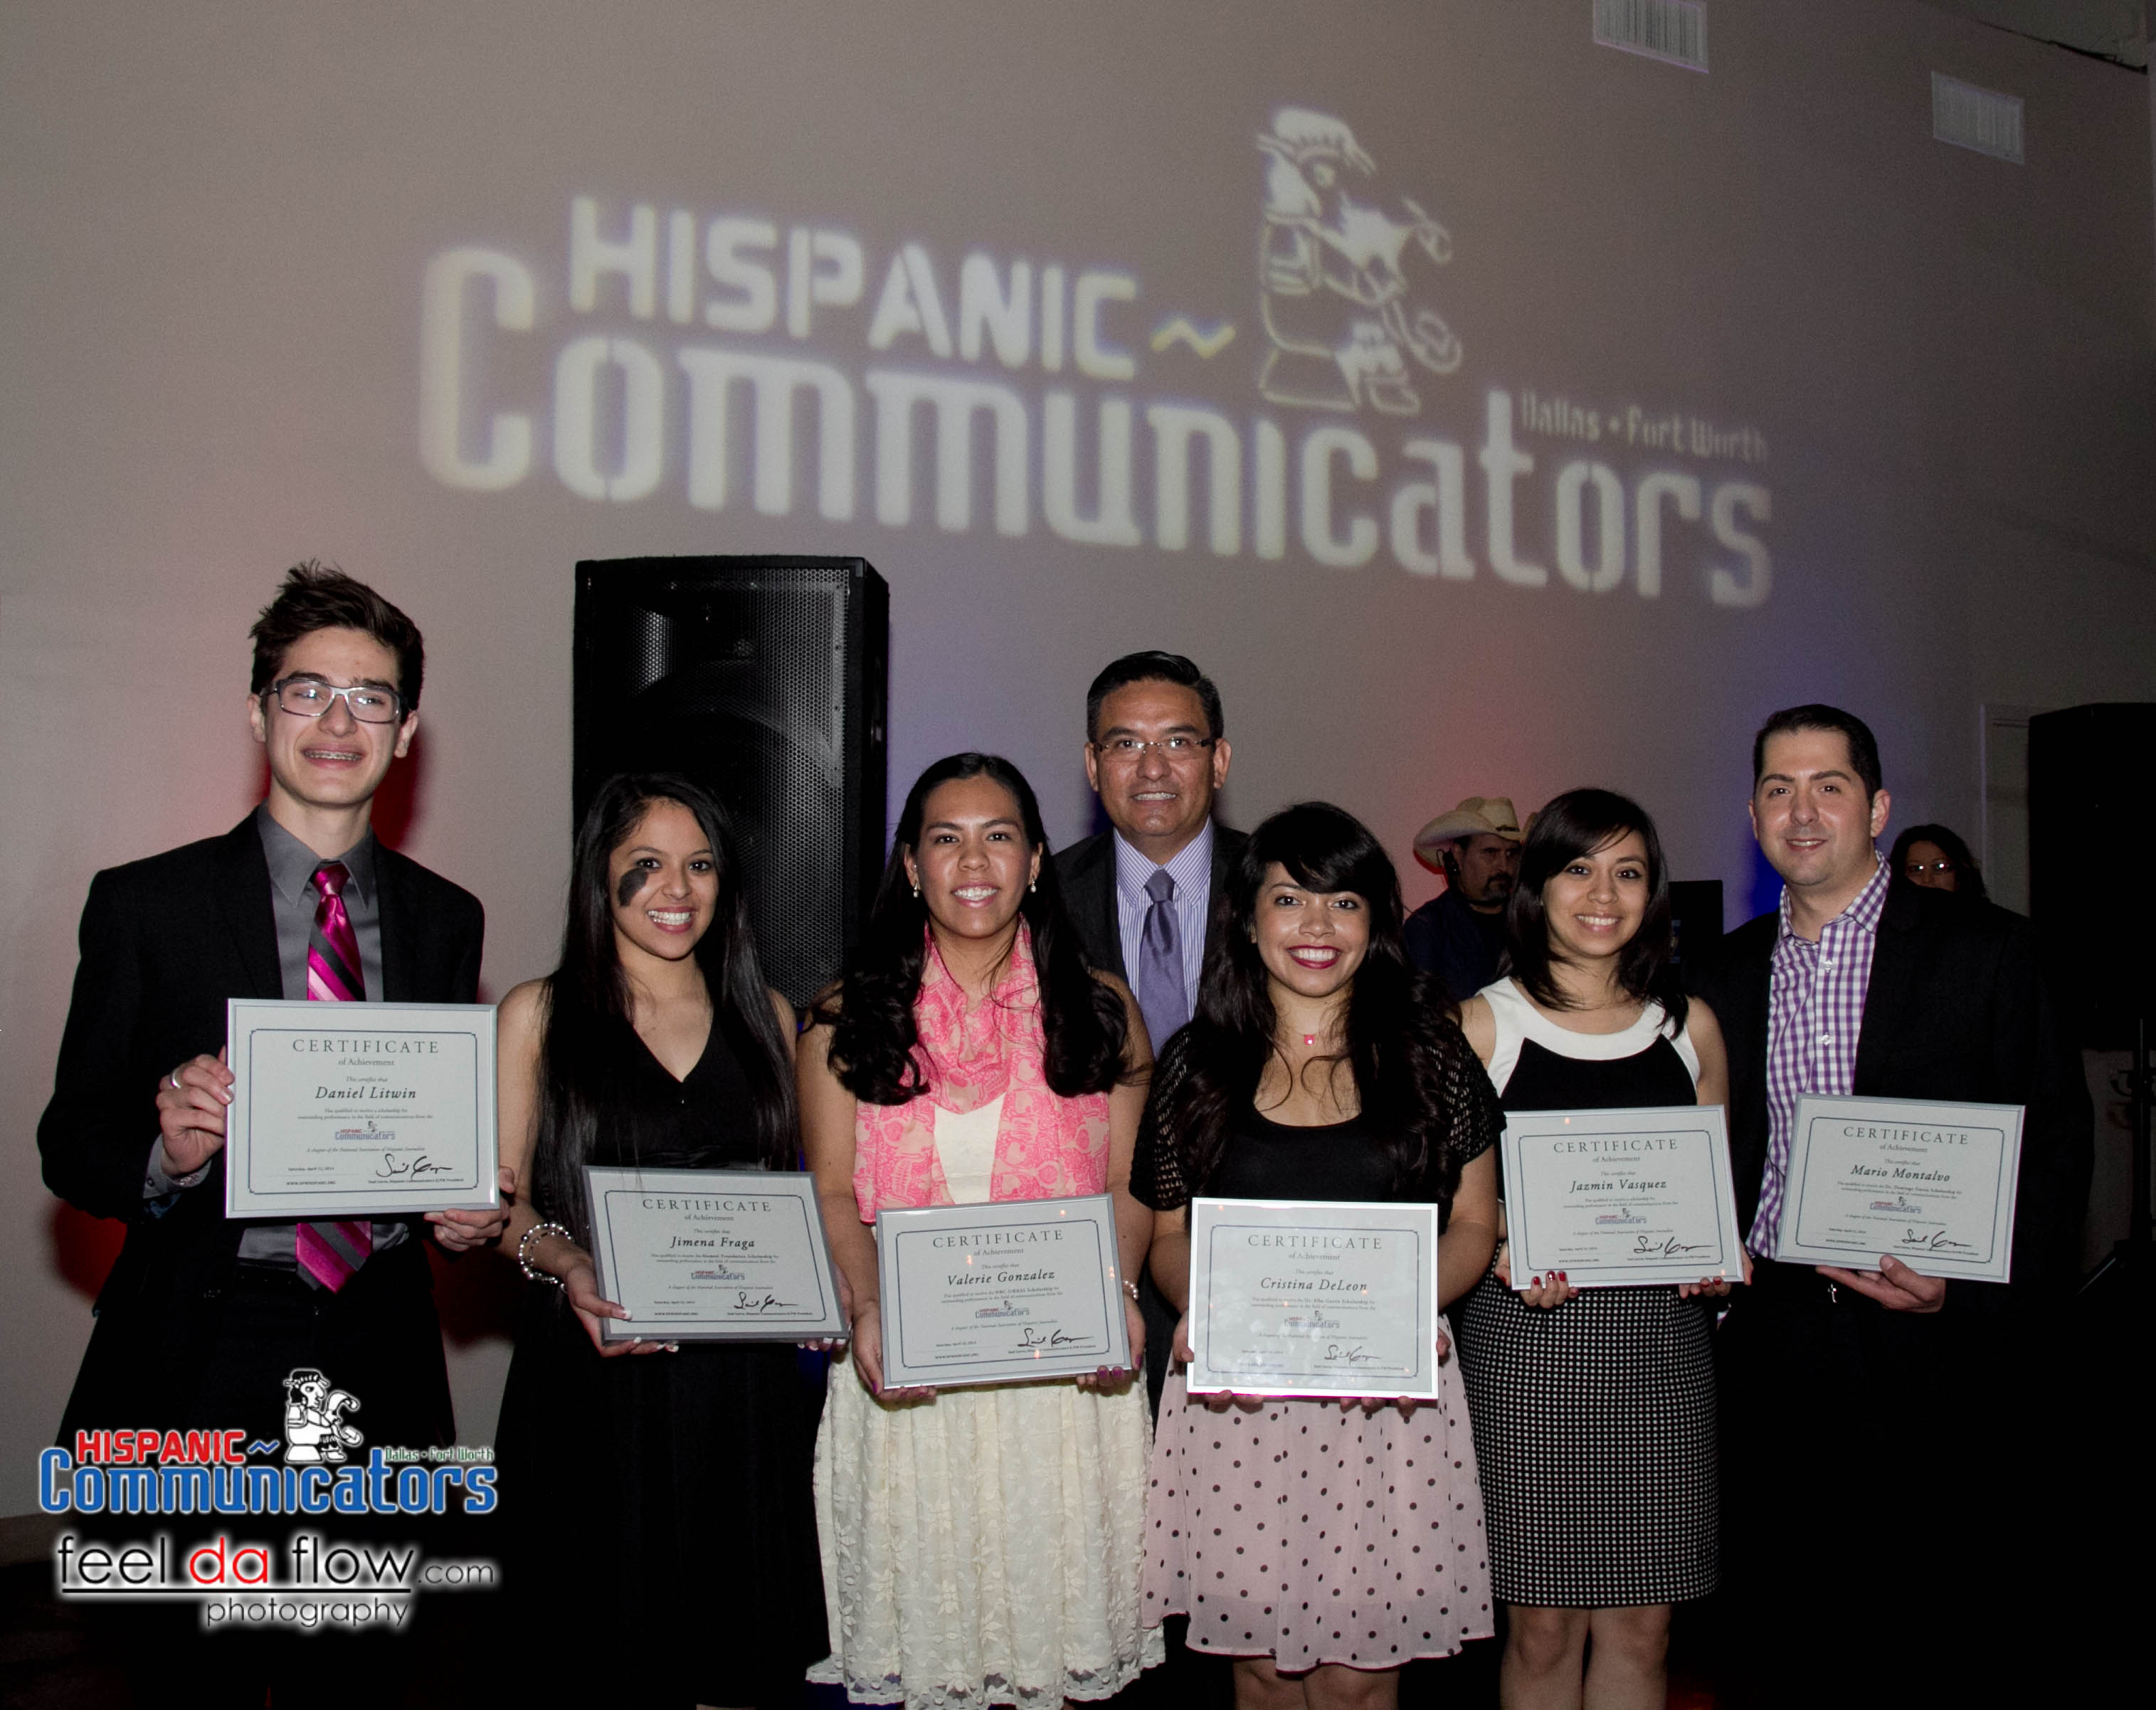 Meet the 2014 Hispanic Communicators-DFW scholarship winners